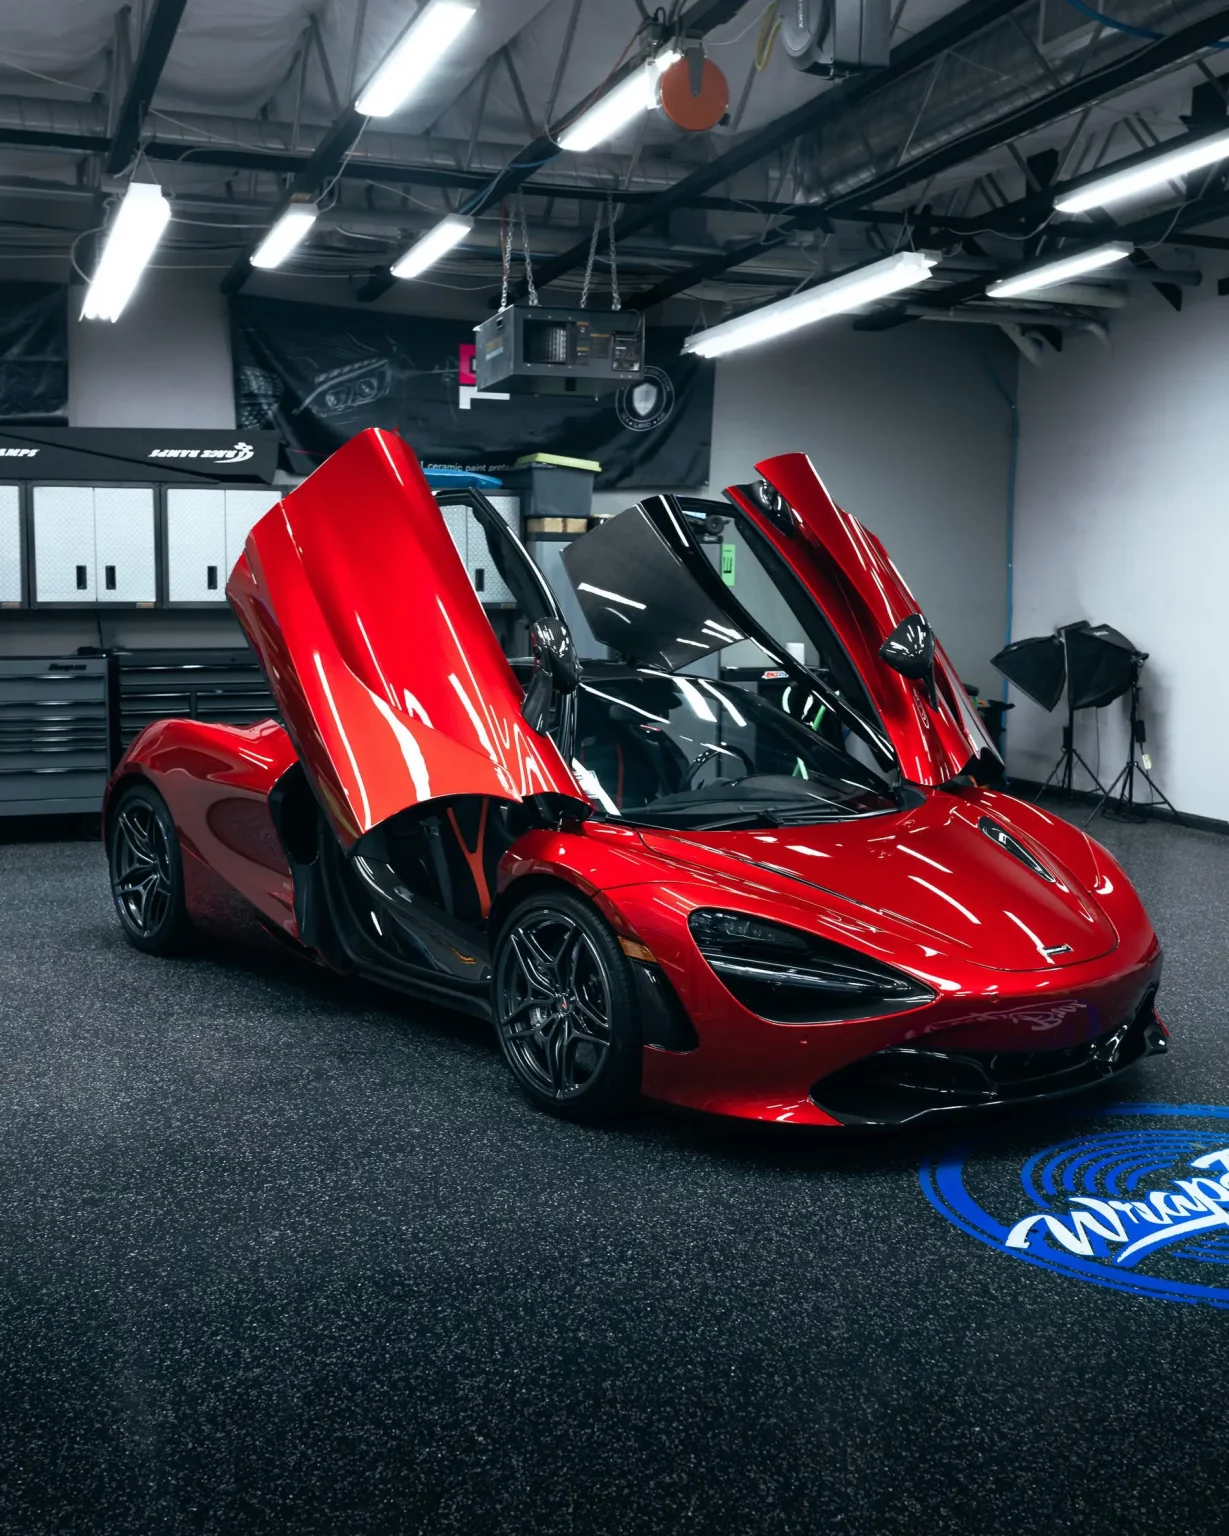 McLaren rouge brillante dans un showroom, accentuant le design élégant et l'exclusivité des voitures de luxe.